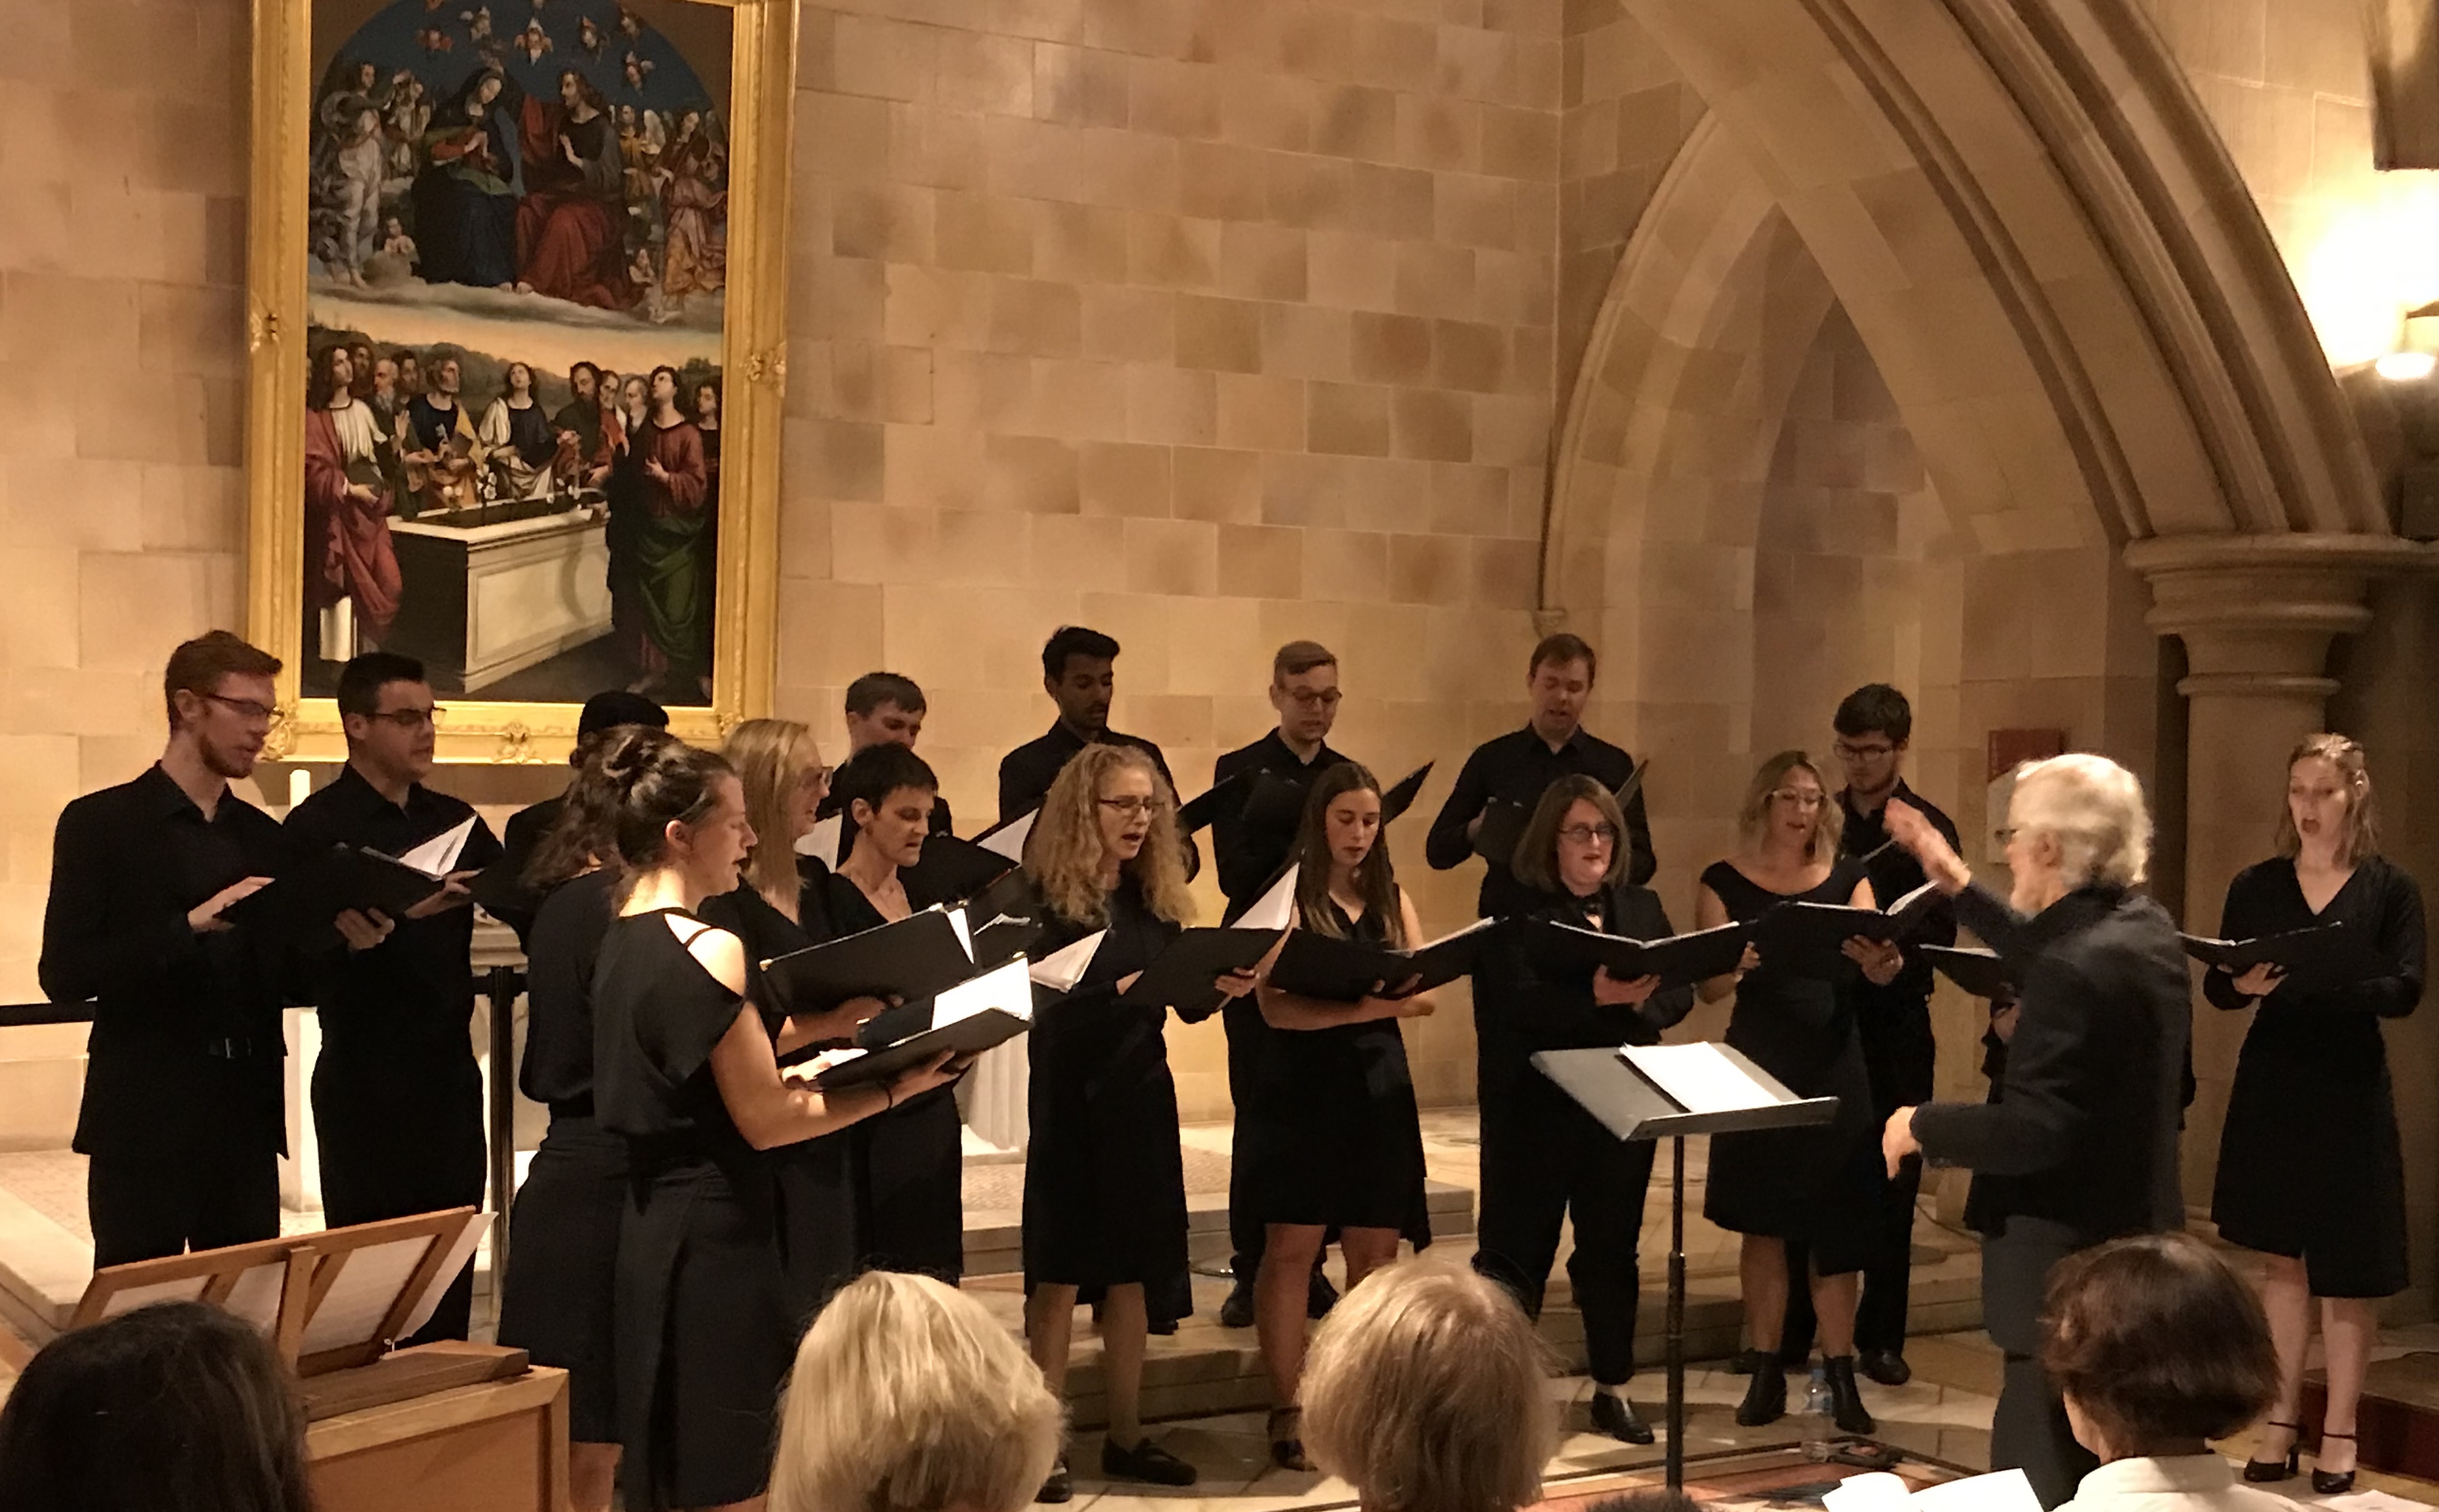 Concert Review: A Baroque Christmas/ Australian Chamber Choir